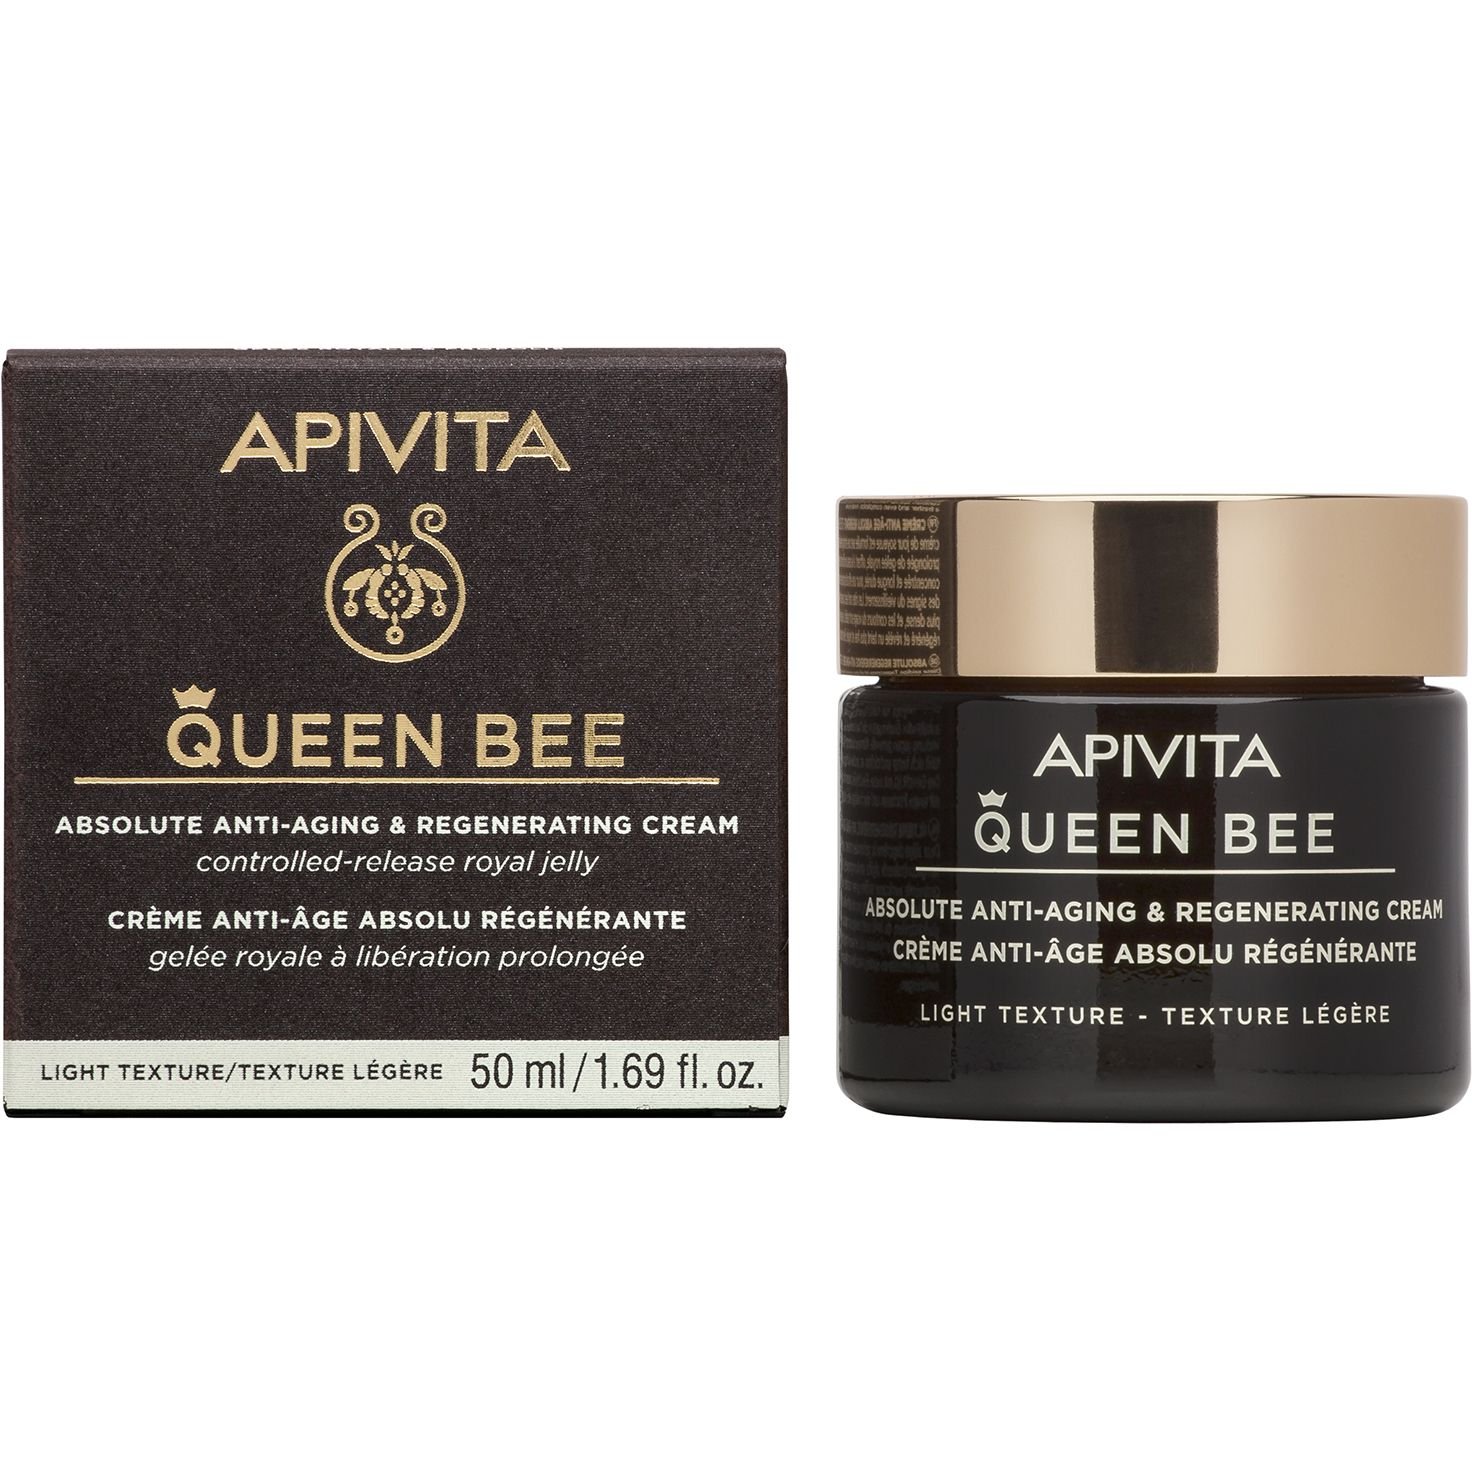 Крем легкої текстури Apivita Queen Bee для комплексної антивікової та регенеруючої дії, 50 мл - фото 1